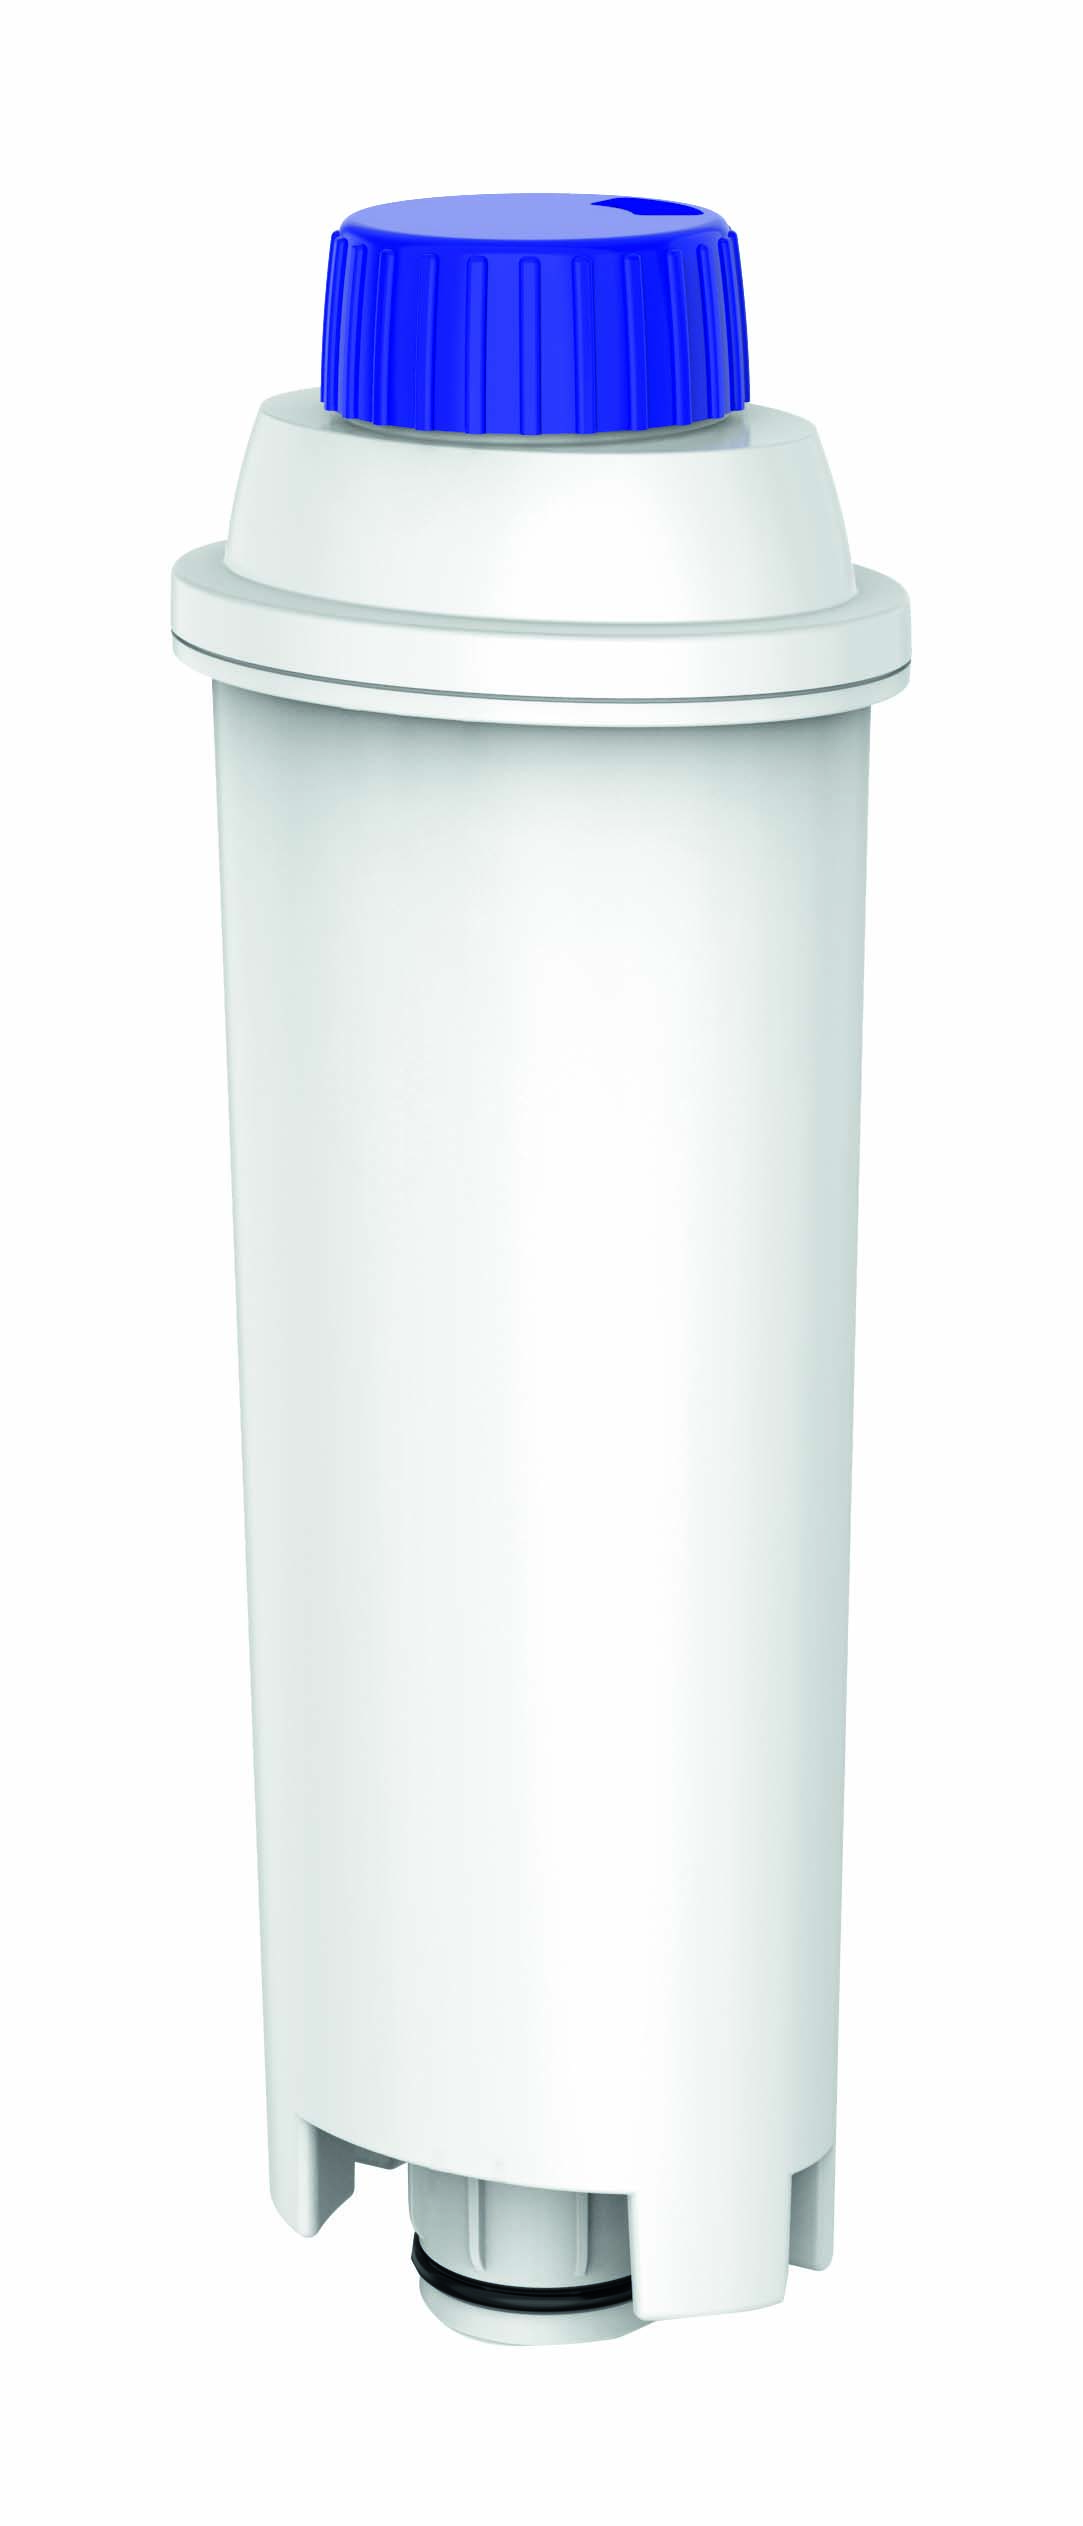 DELONGHI KWF-003-D statt KOENIC einsetzbar Wasserfilter Weiß C002 DLS